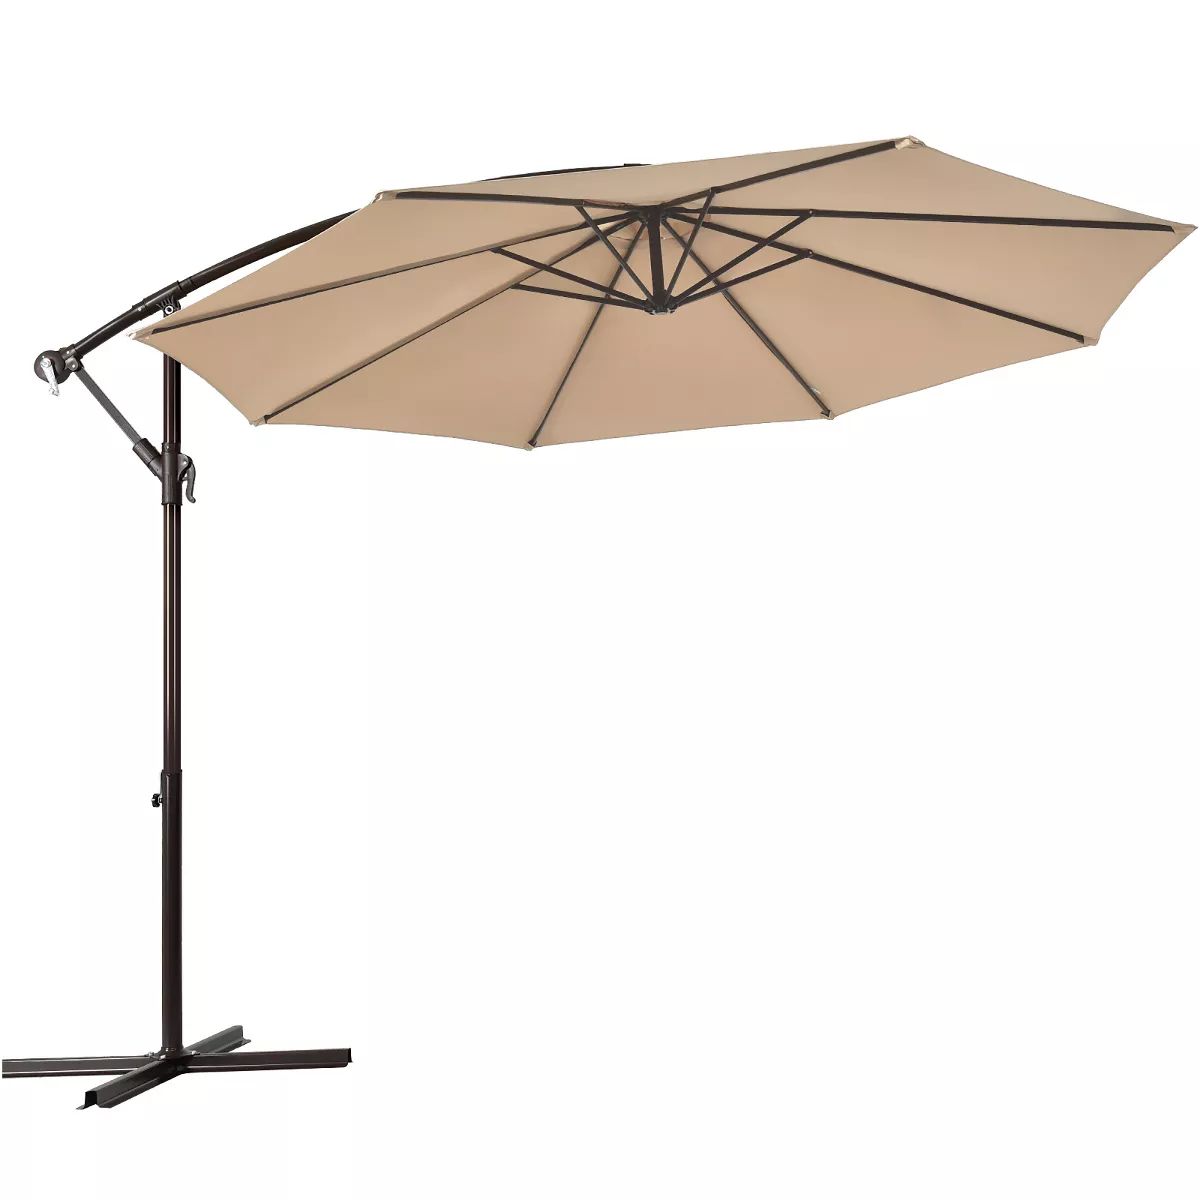 Costway 10' Hanging Umbrella Patio Sun Shade Offset Outdoor Market W/t Cross Base Beige | Target